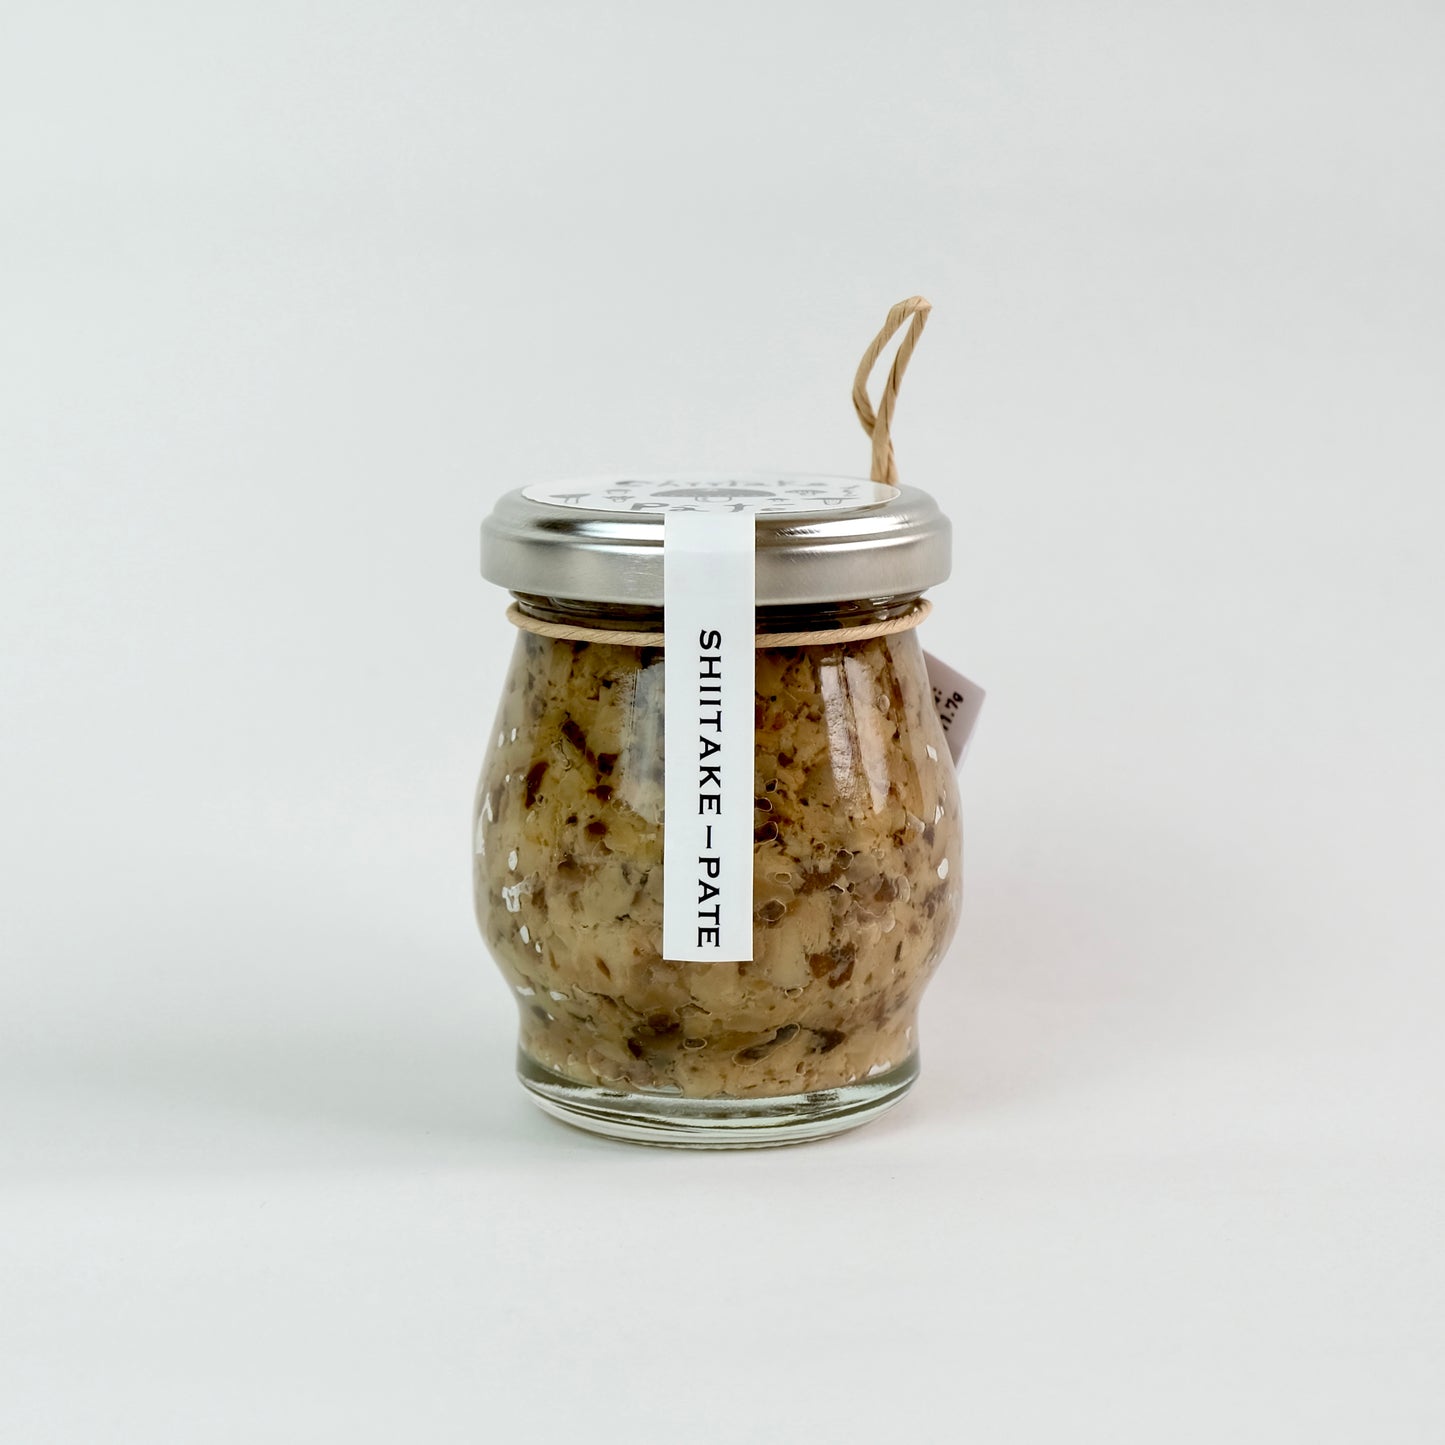 宮崎の原木椎茸で作る贅沢な椎茸パテ 化学調味料/合成保存料 無添加